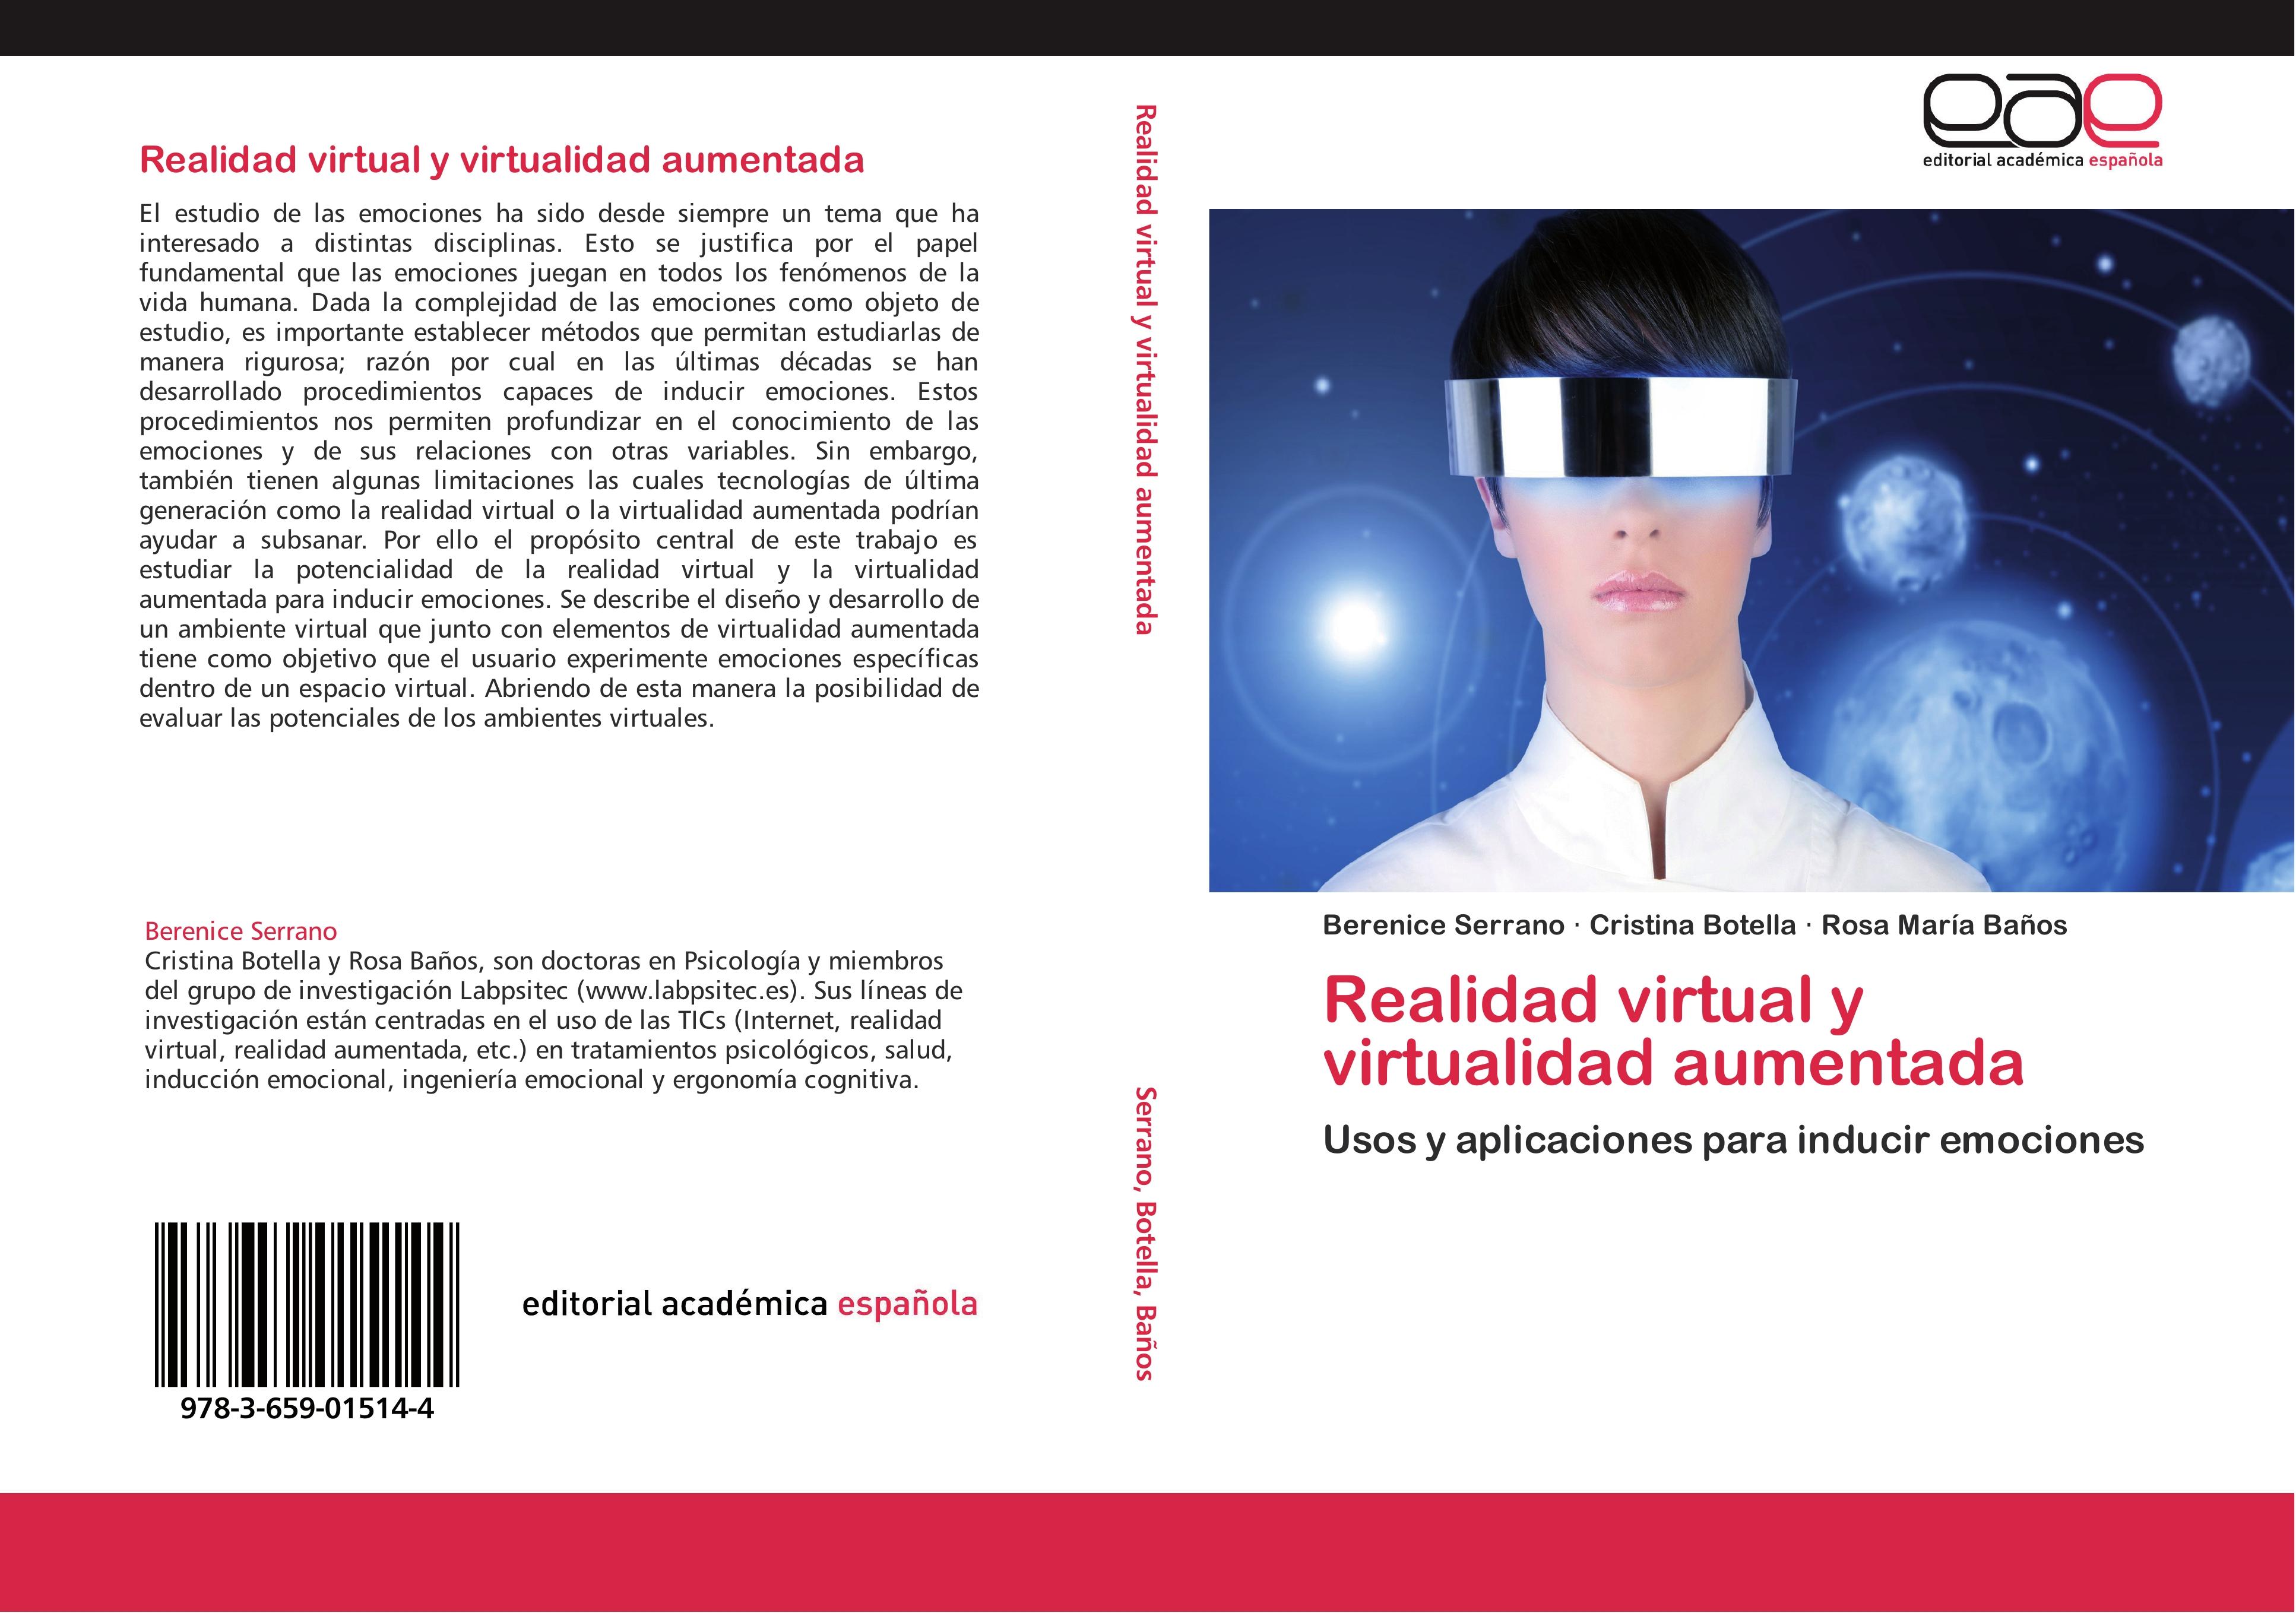 Realidad virtual y virtualidad aumentada - Berenice Serrano Cristina Botella Rosa María Baños